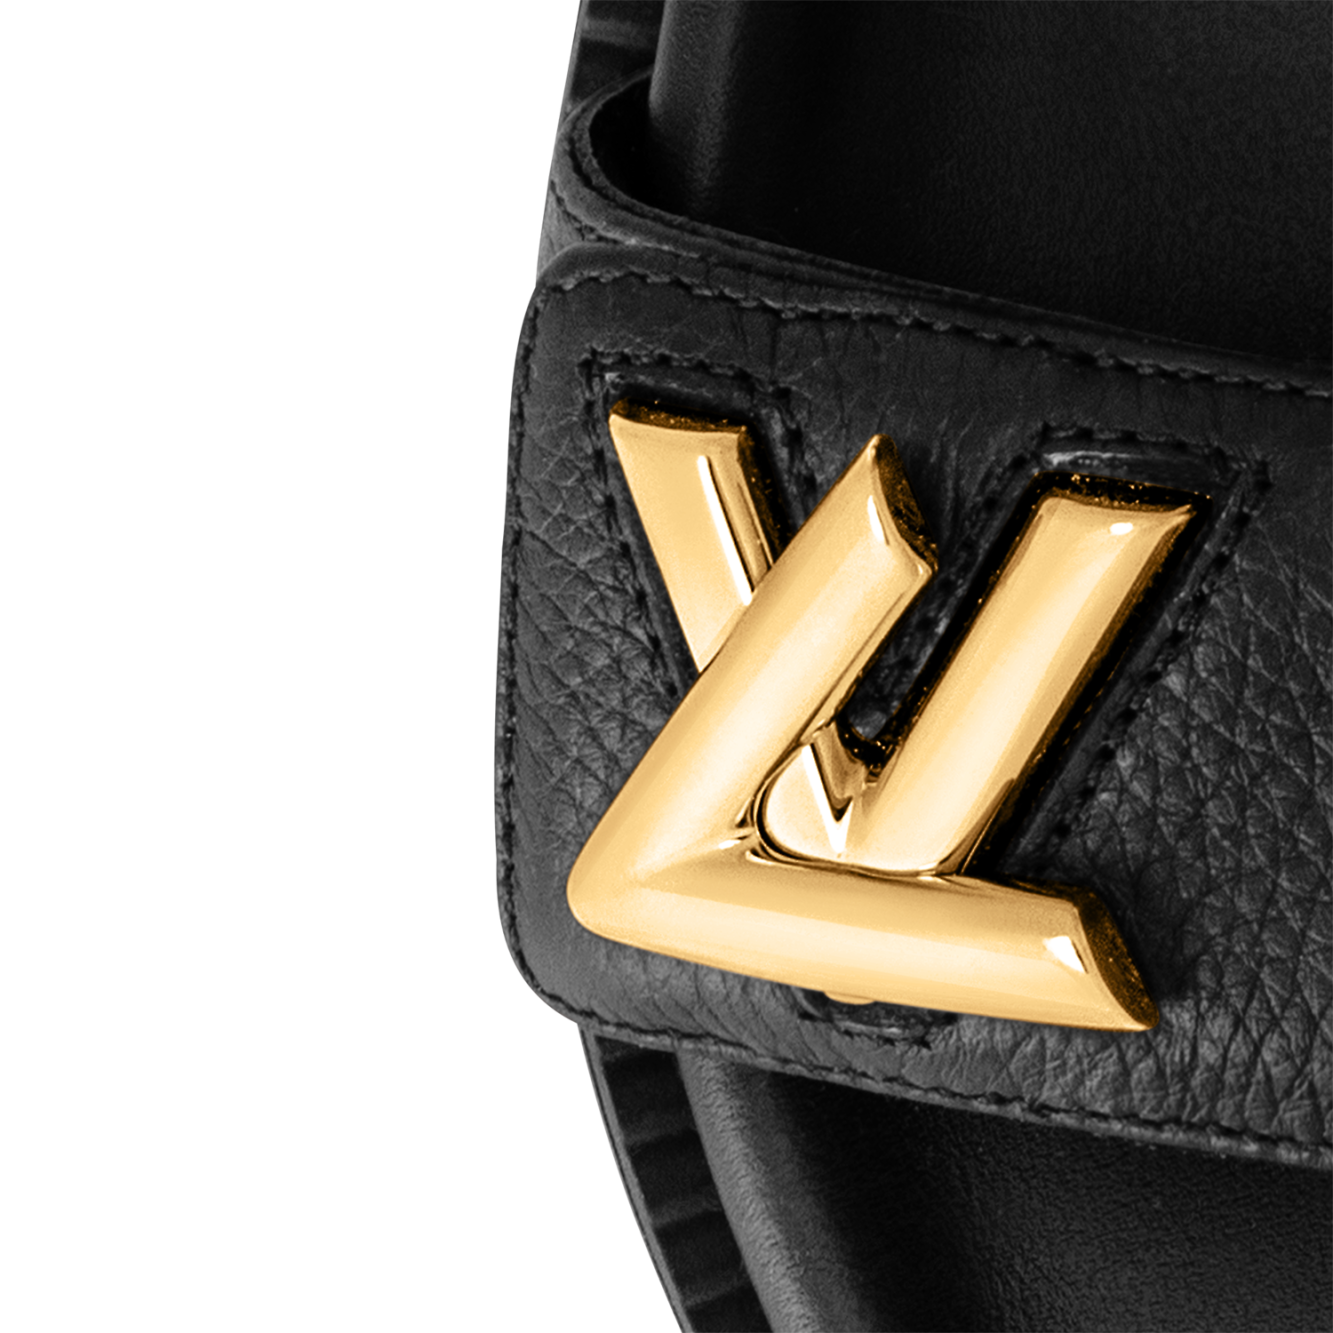 Louis Vuitton LV Sunset Flat Comfort Sandals